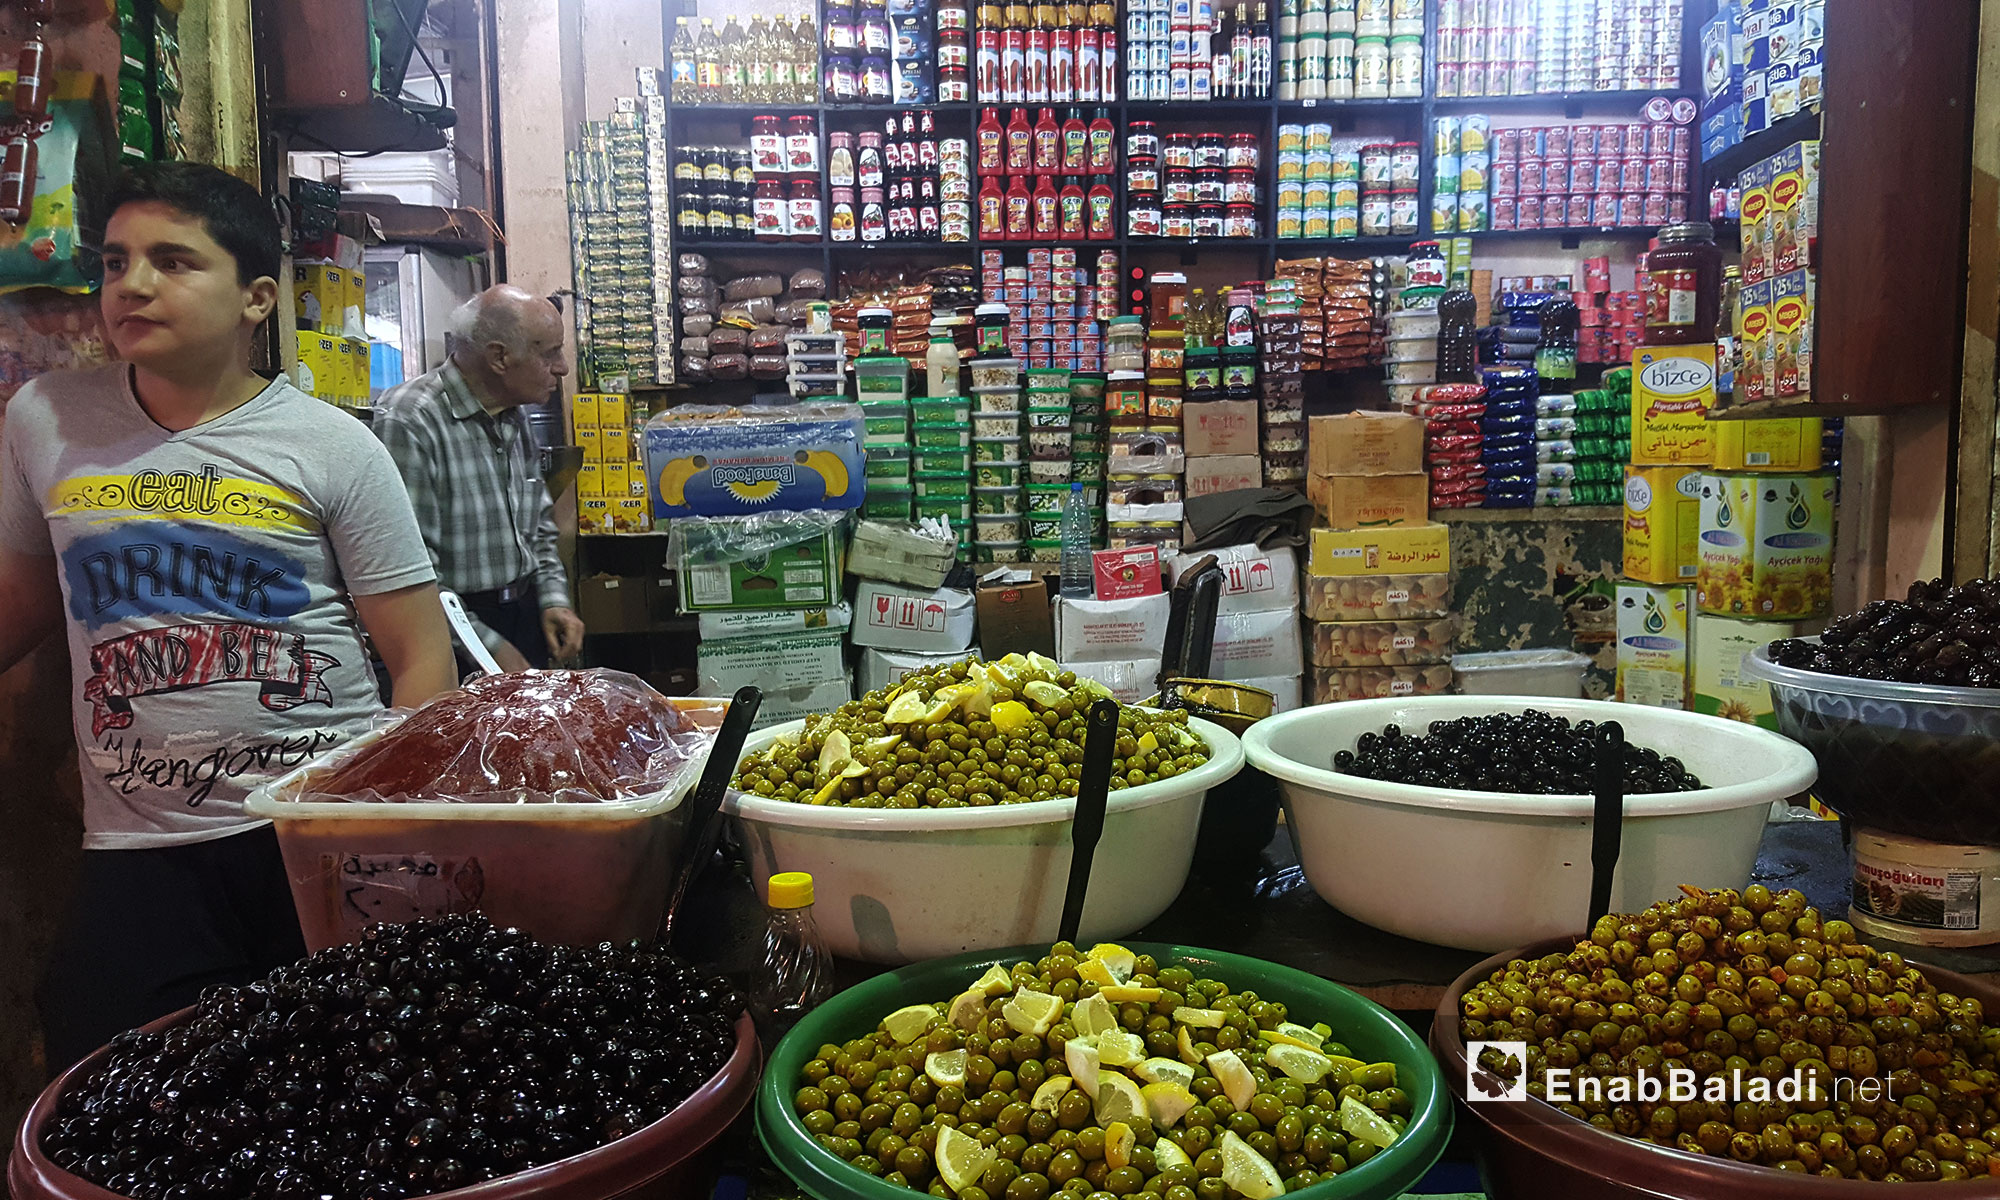 مواطنون يتسوقون في "سوق الأتراك" في مدينة القامشلي - 5 أيار 2017 (عنب بلدي)